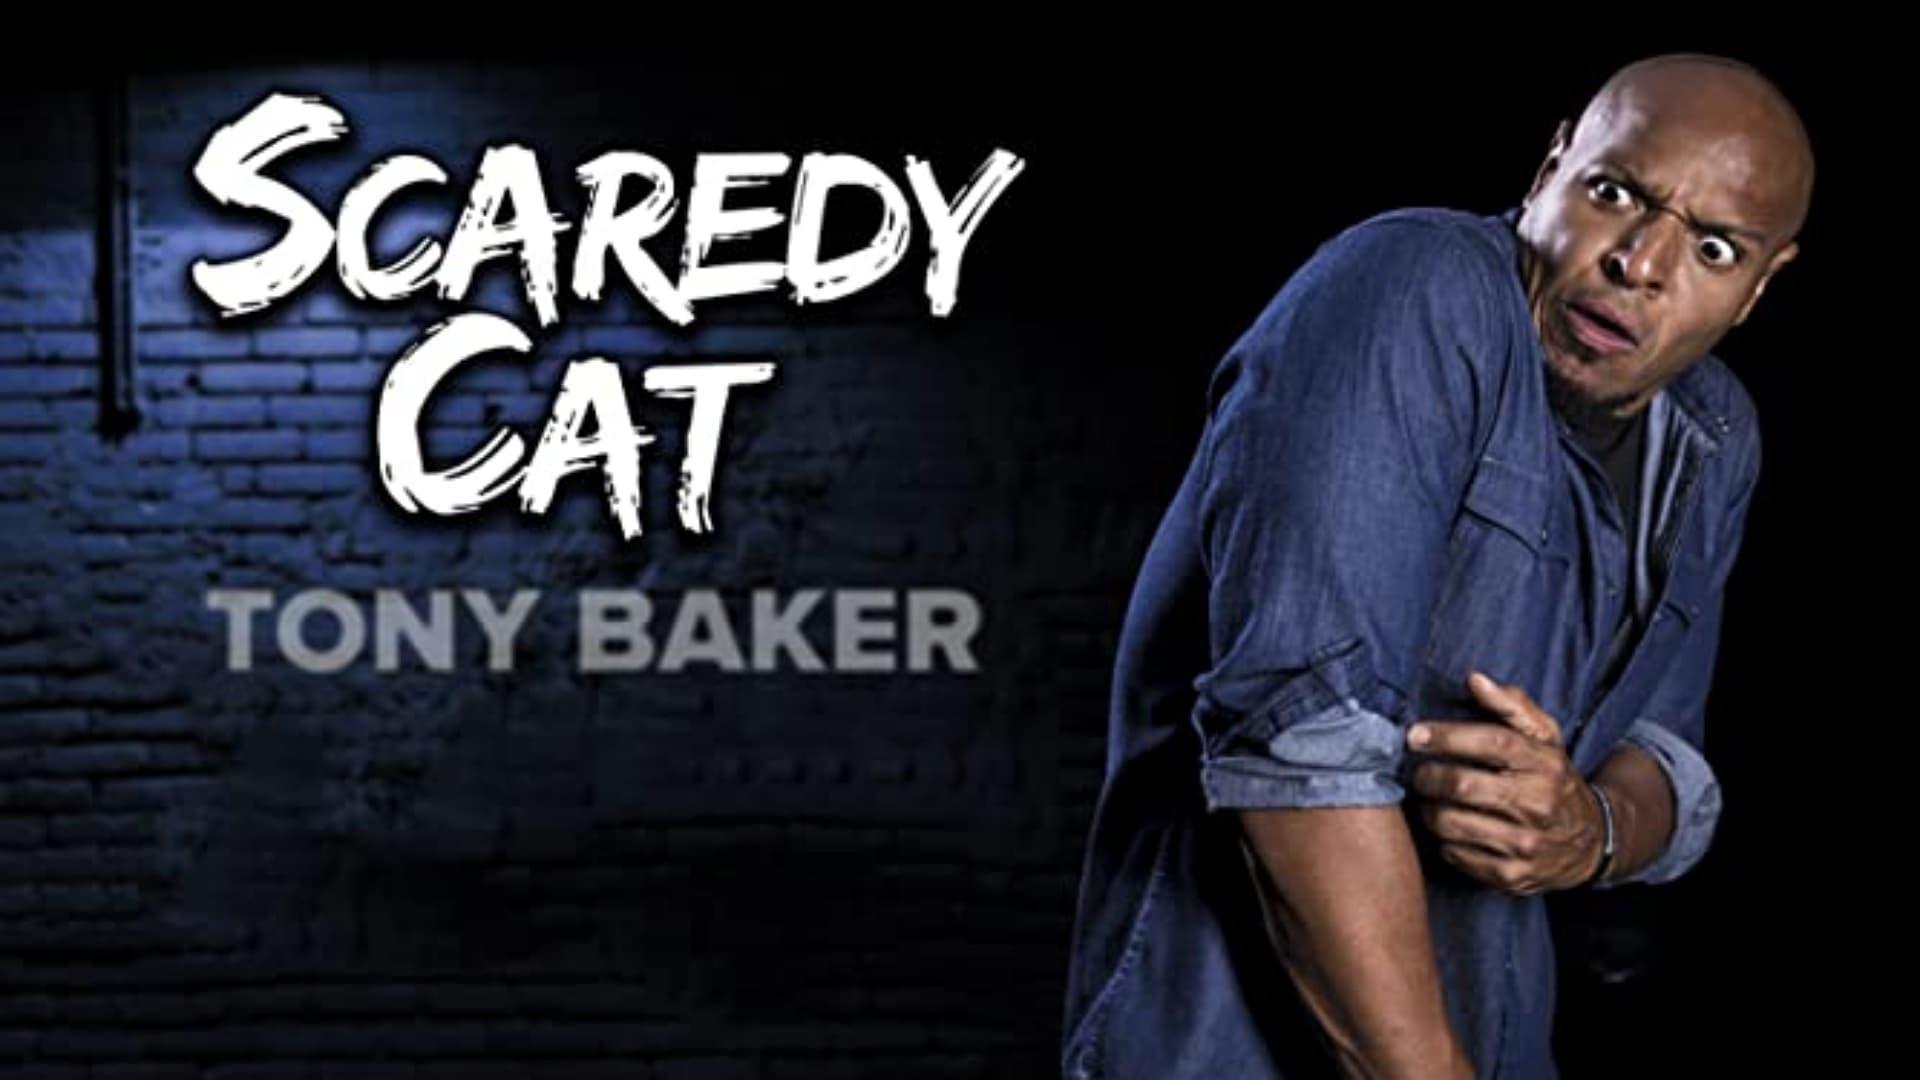 Tony Baker's Scaredy Cat backdrop